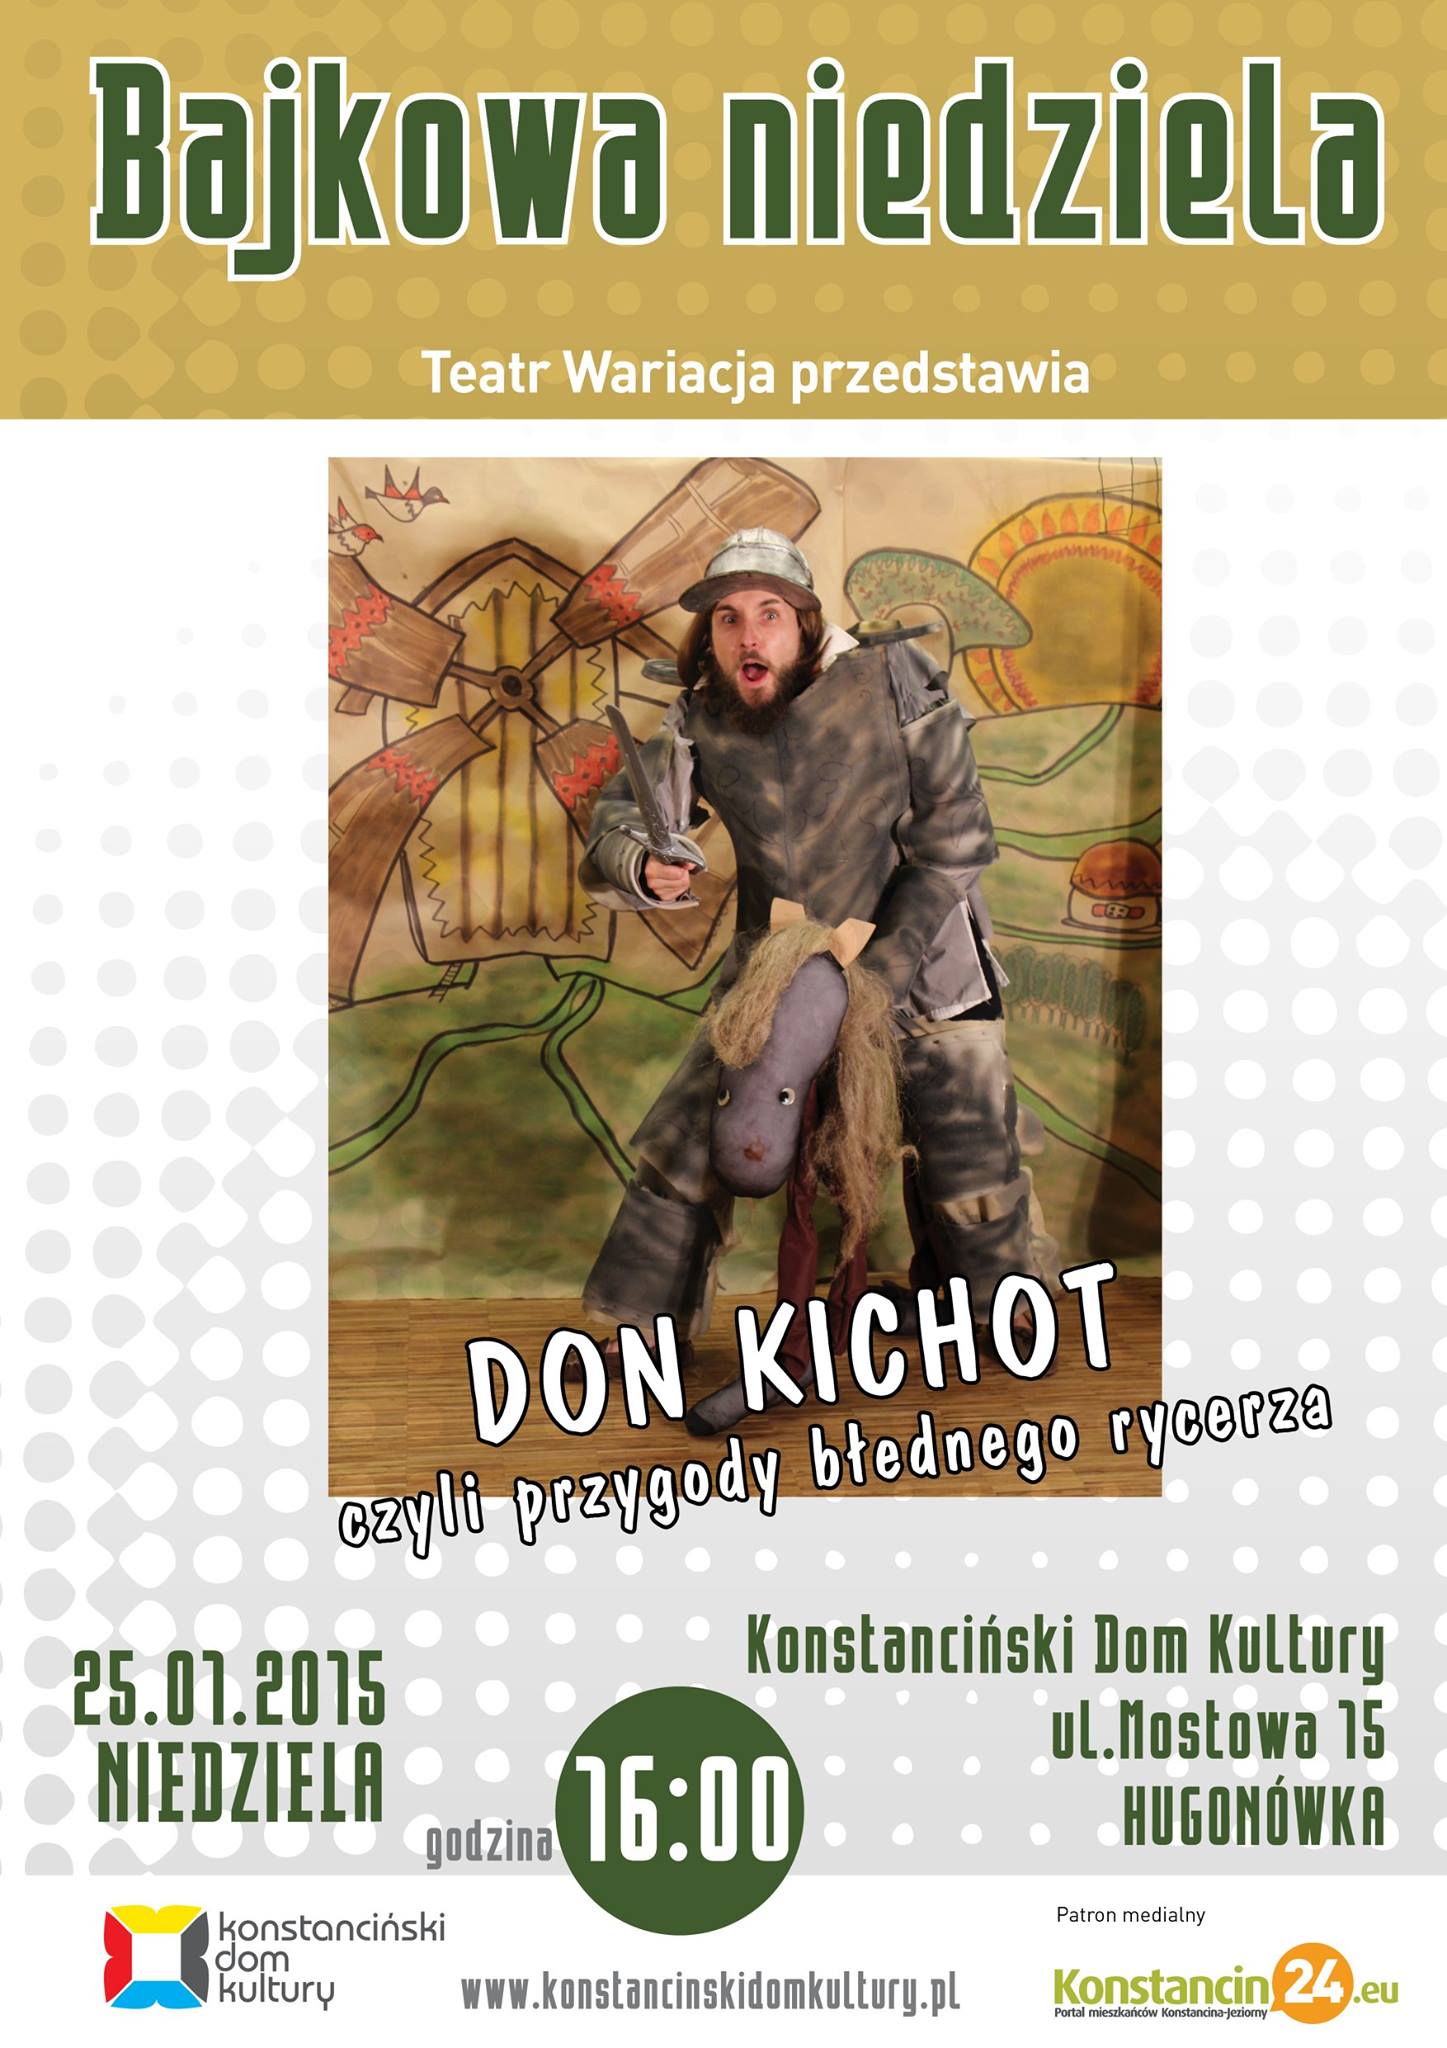 Don Kichot, czyli przygody błędnego rycerza - Bajkowa Niedziela